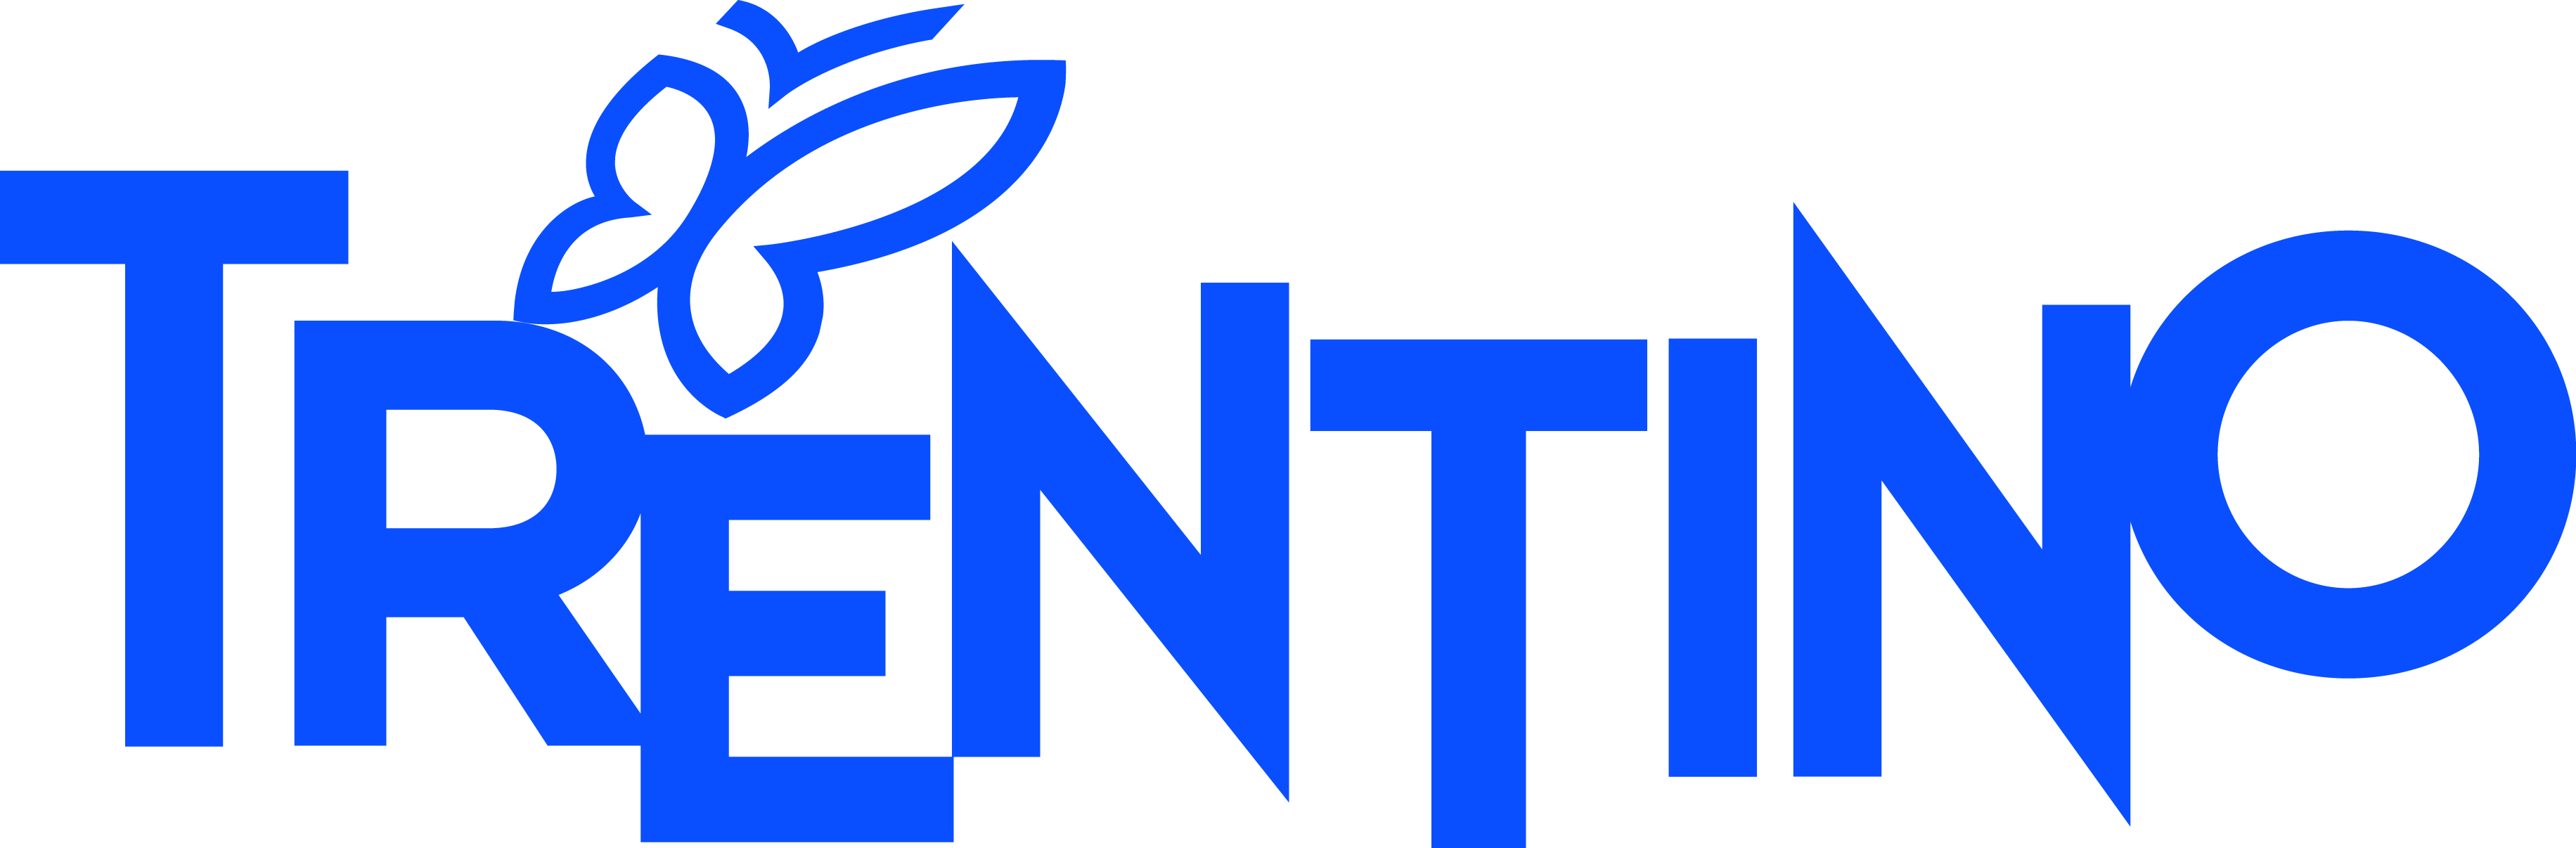 trentino logo CMYK Blu